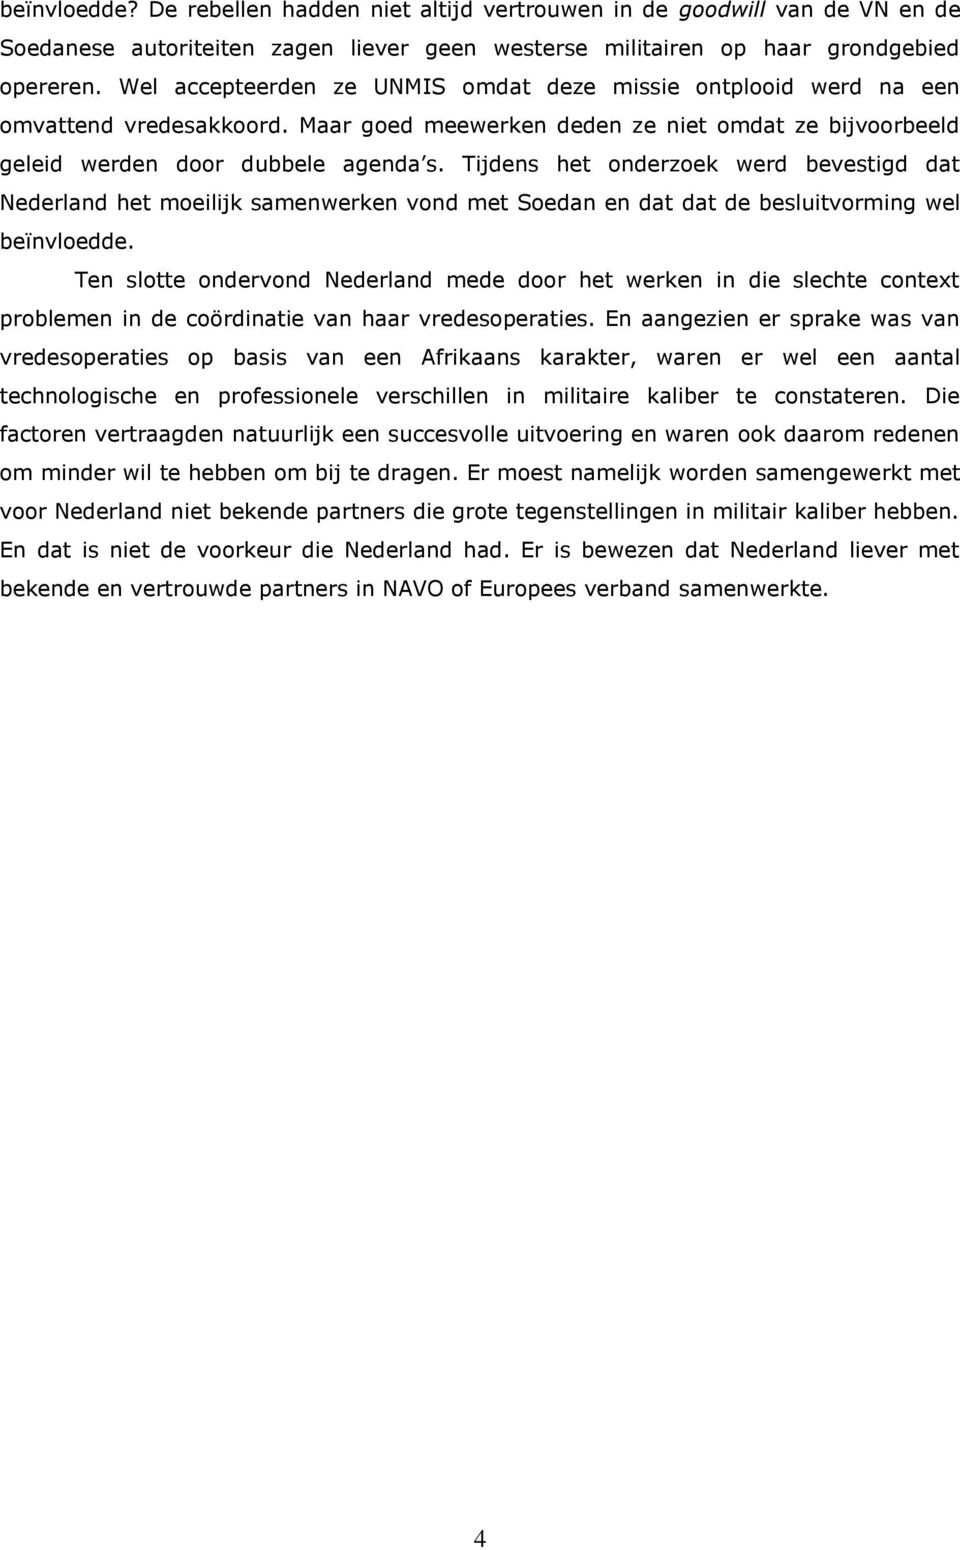 Tijdens het onderzoek werd bevestigd dat Nederland het moeilijk samenwerken vond met Soedan en dat dat de besluitvorming wel beïnvloedde.